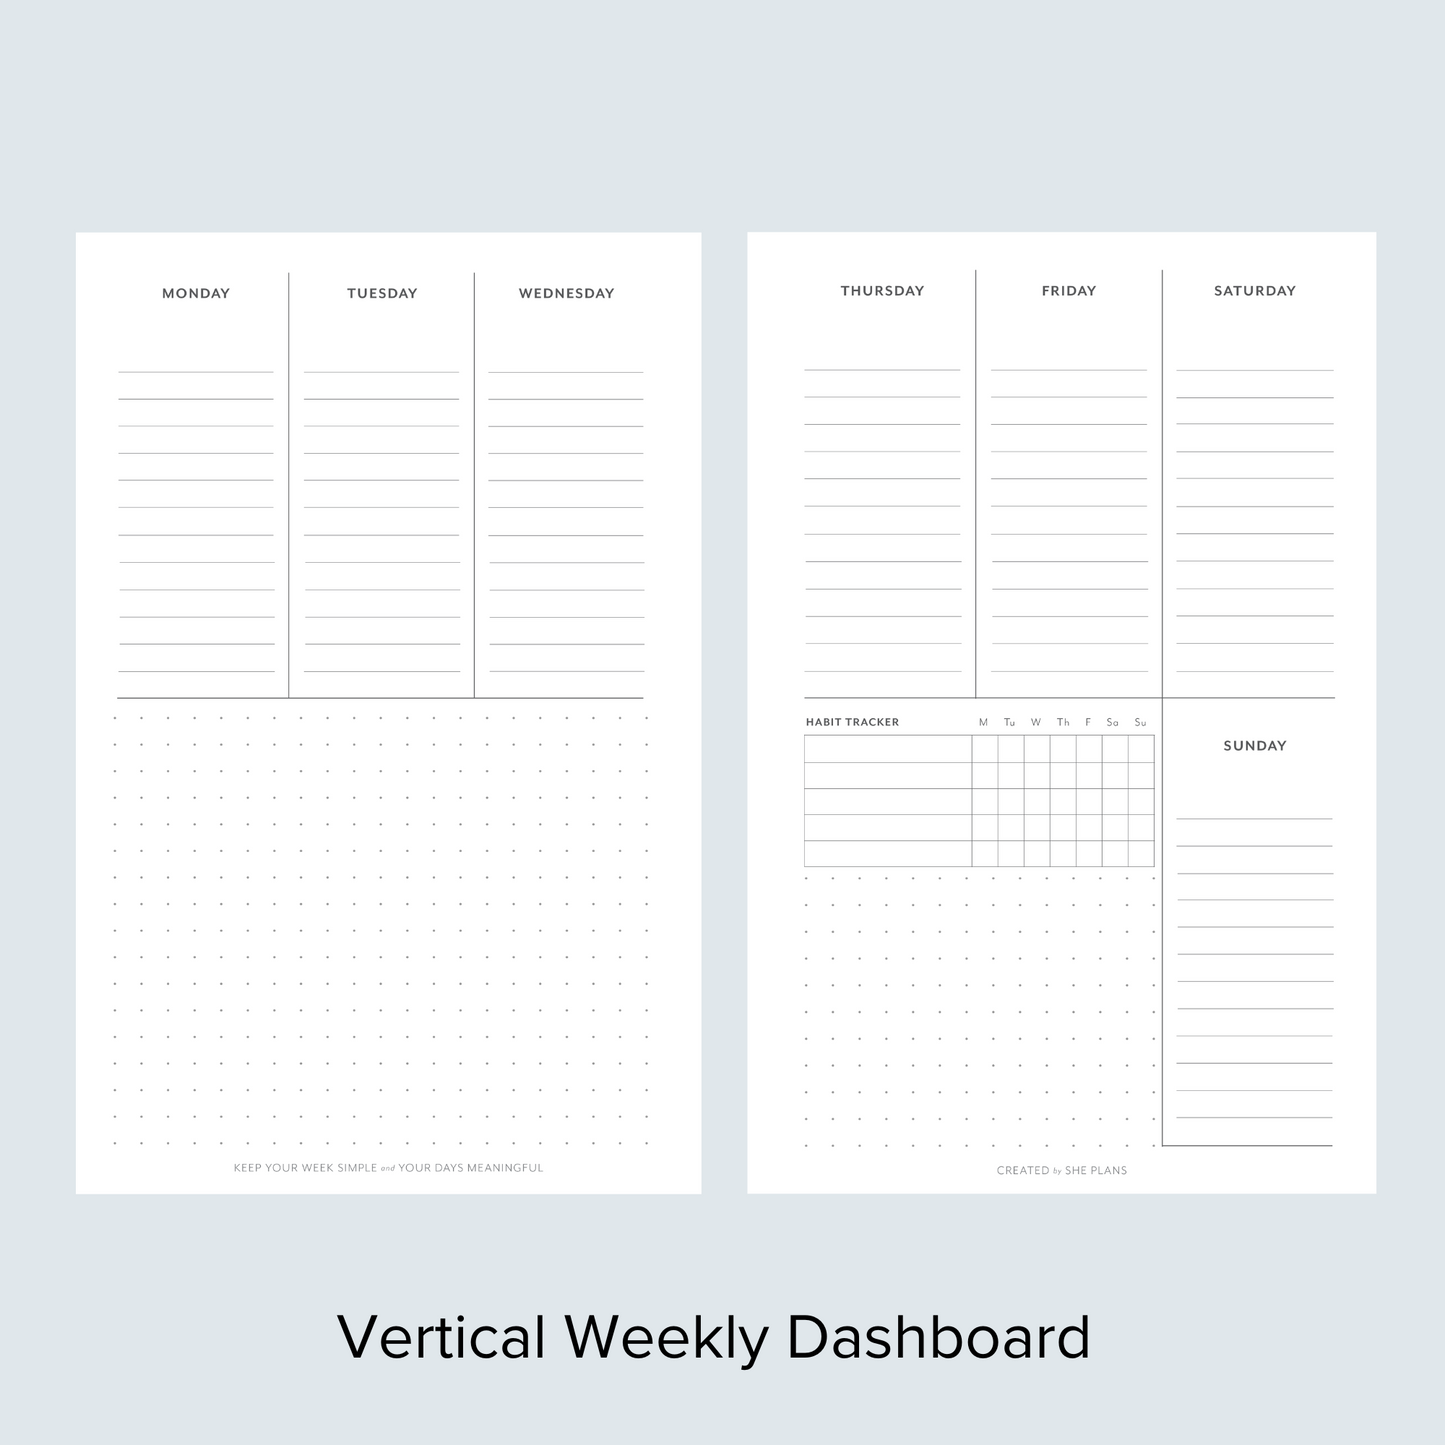 Vertical Weekly Dashboard Discbound Inserts (6 Months)